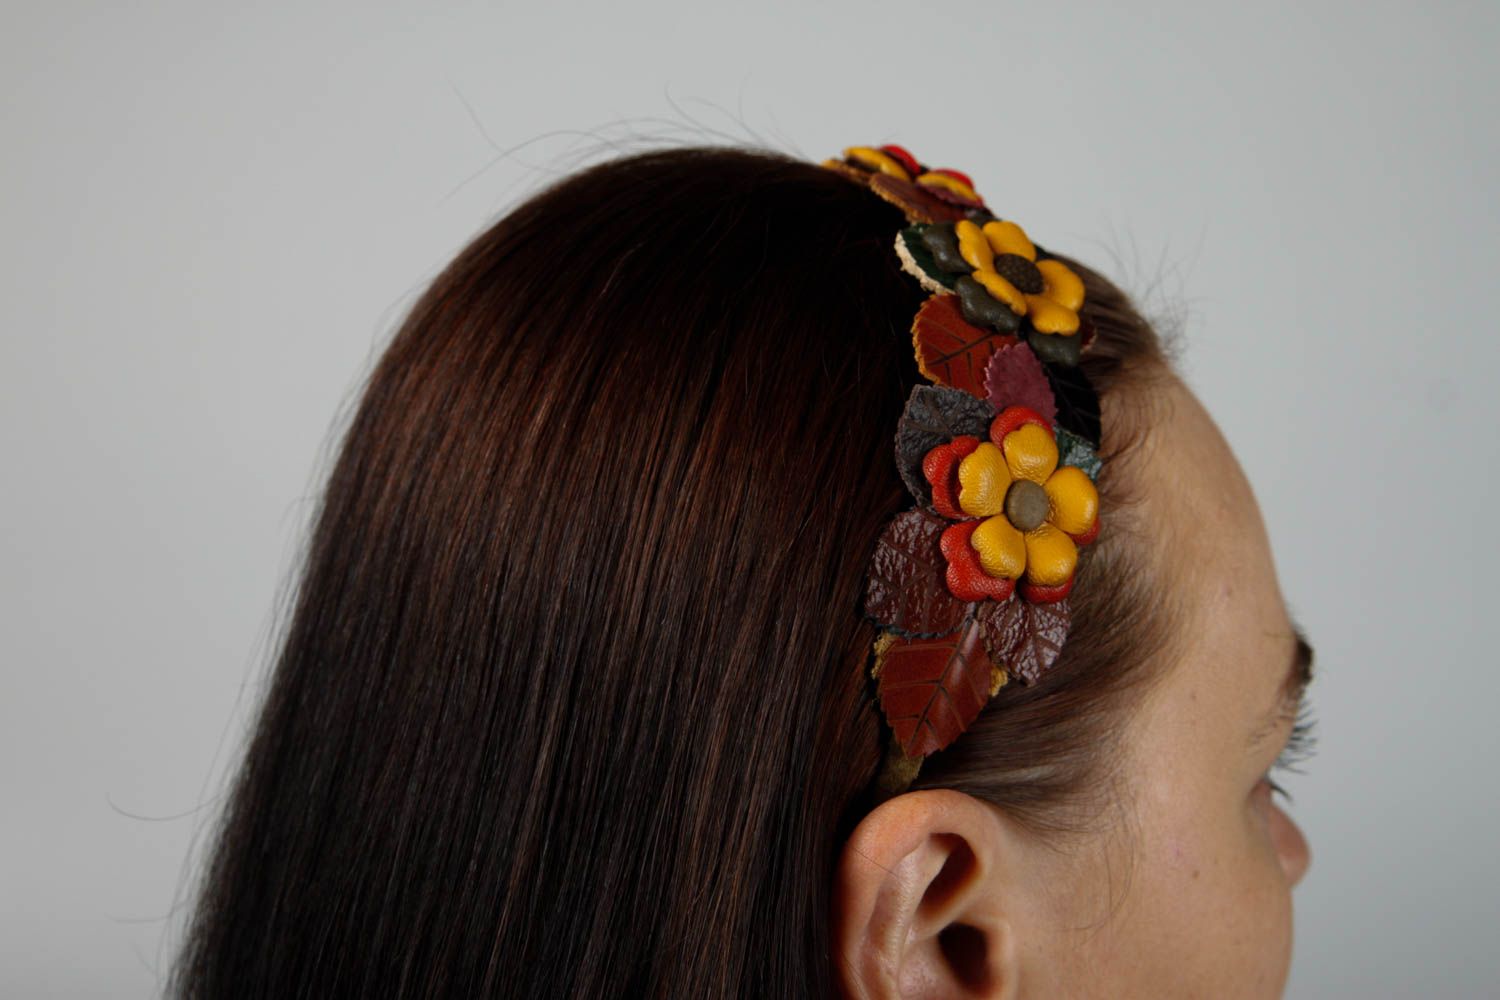 Обруч для волос хэнд мейд аксессуар для волос с цветами украшение на голову фото 2